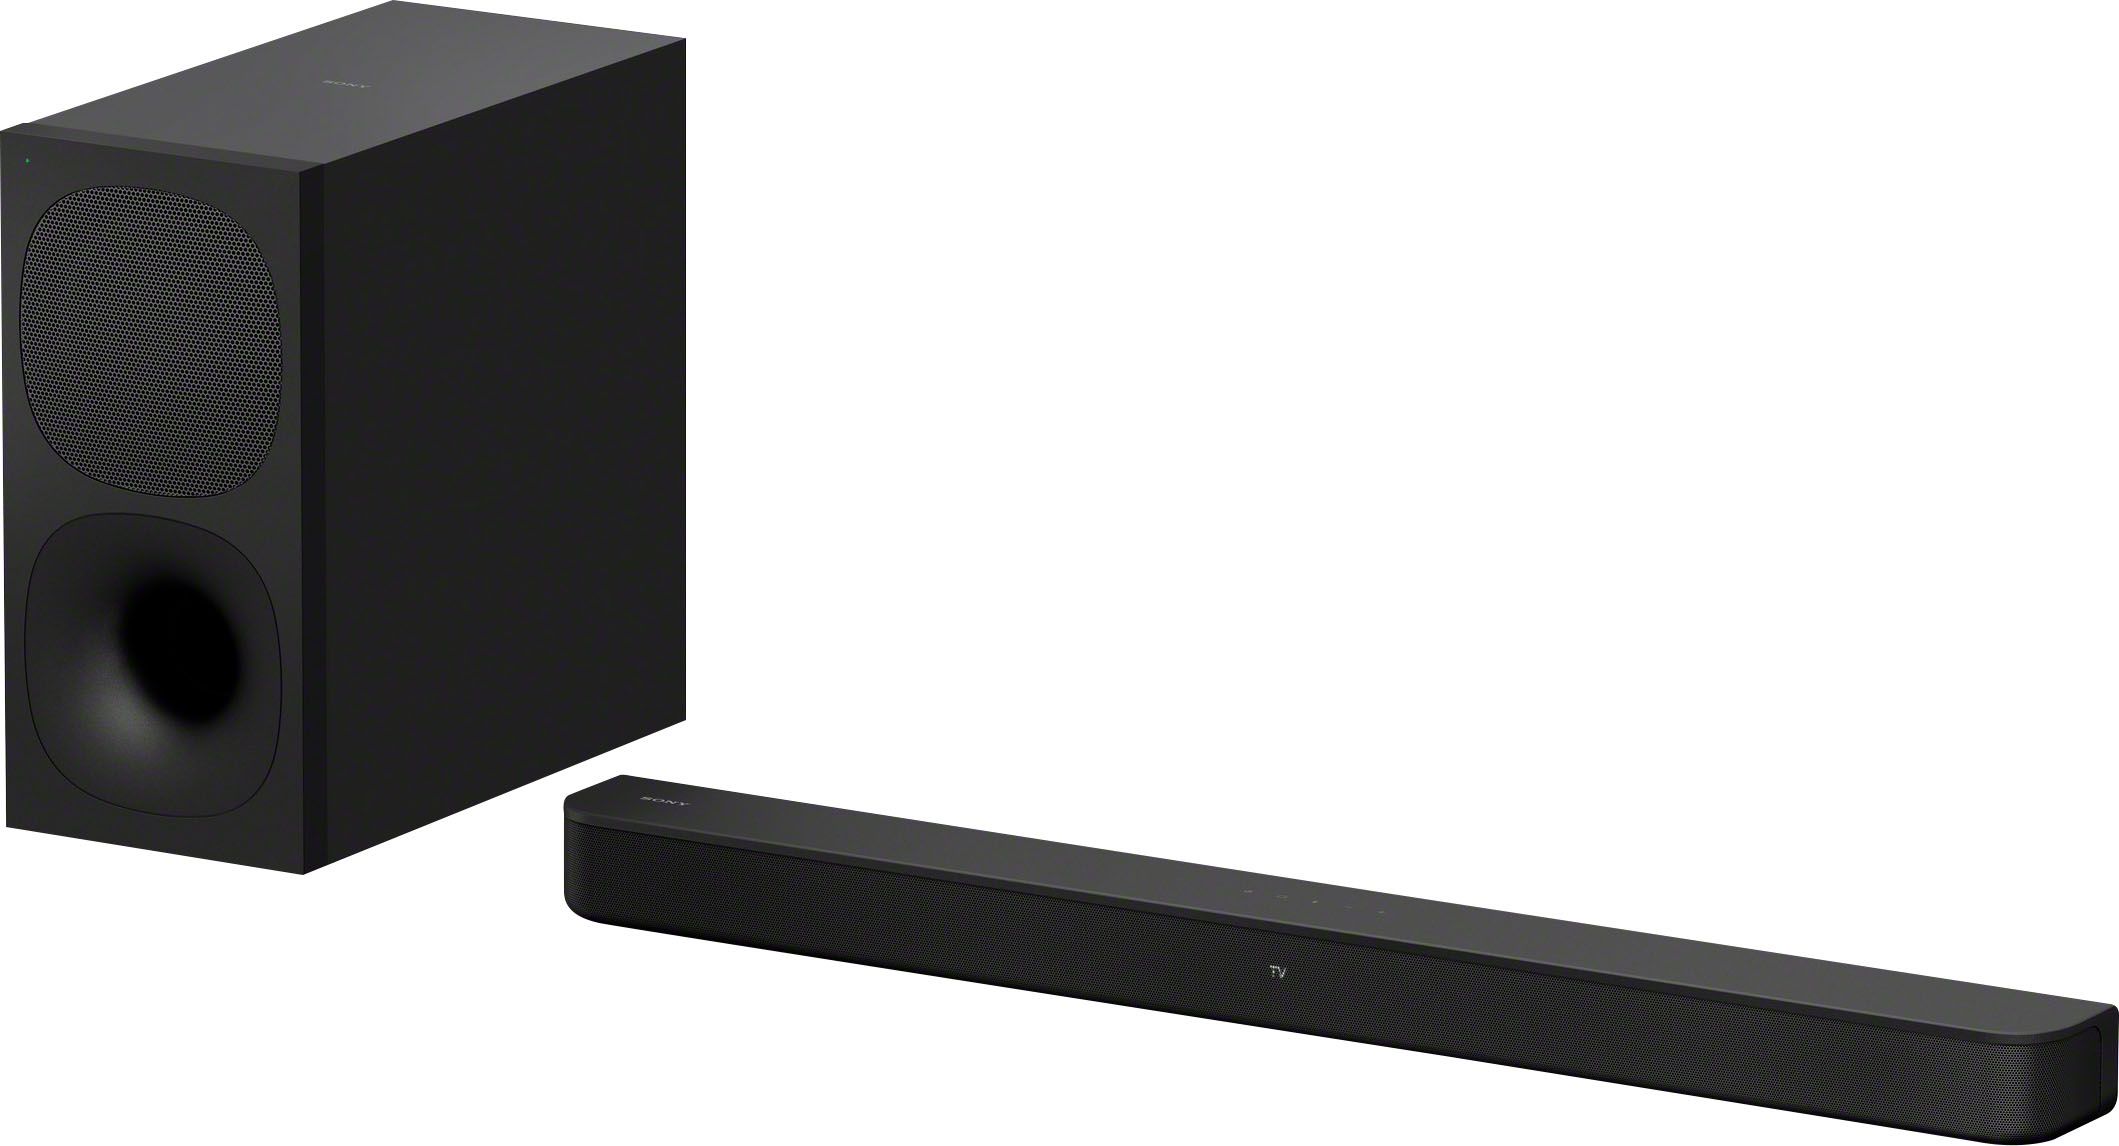 Sony HT-S400 2.1ch Soundbar with powerful wireless Subwoofer Black HTS400 - Best Buy | Best Buy U.S.